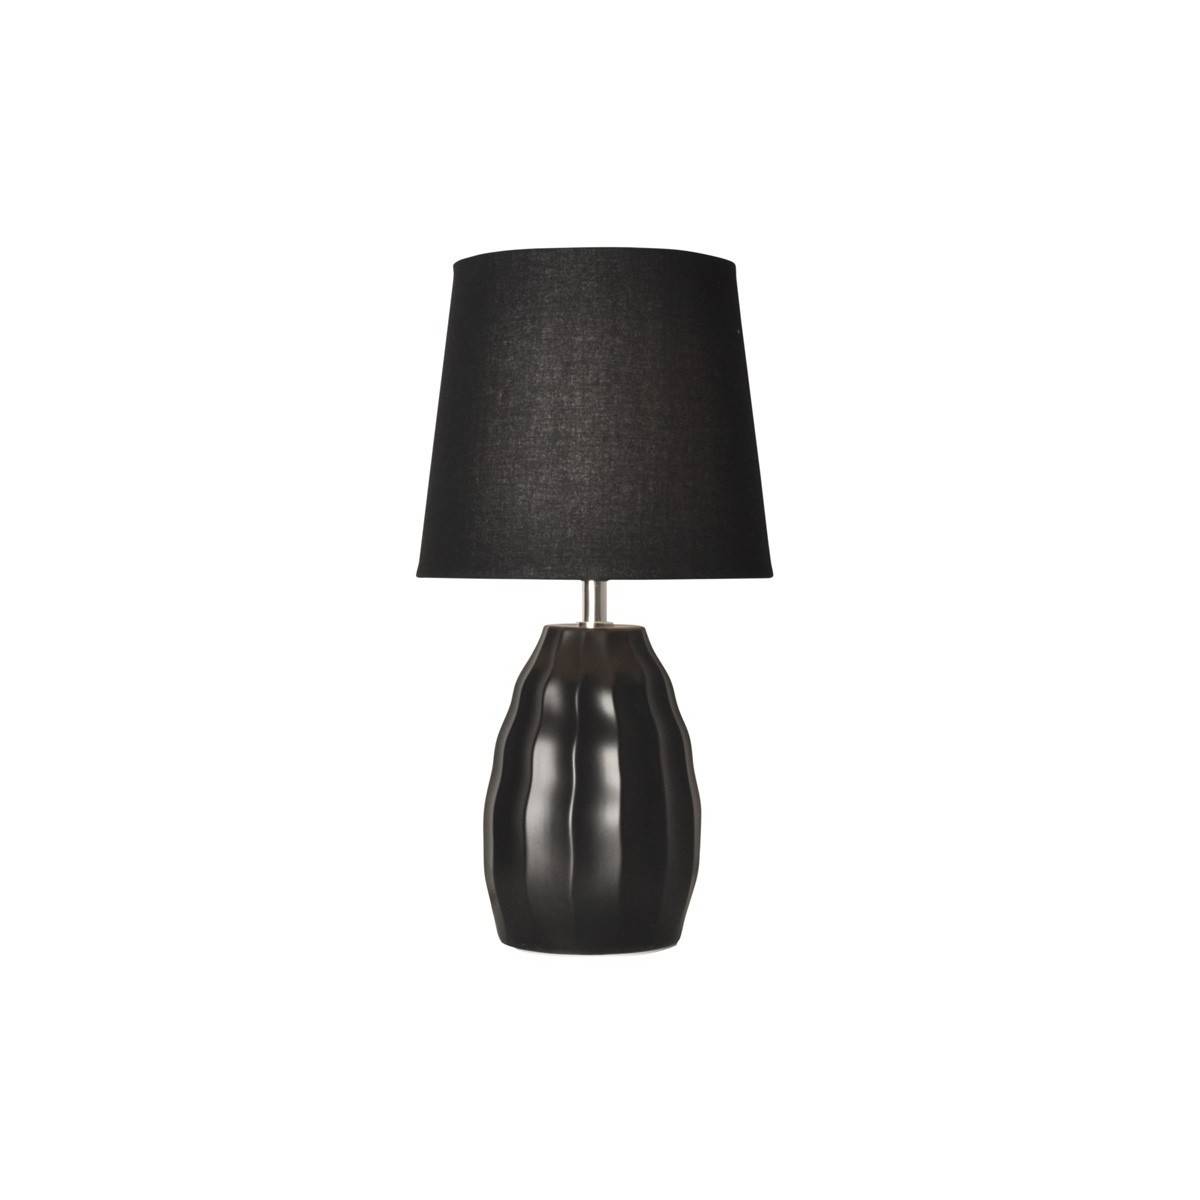 Porzellan-Tischleuchte für das Schlafzimmer - Porzellanlampe - Tischlampe Schwarz